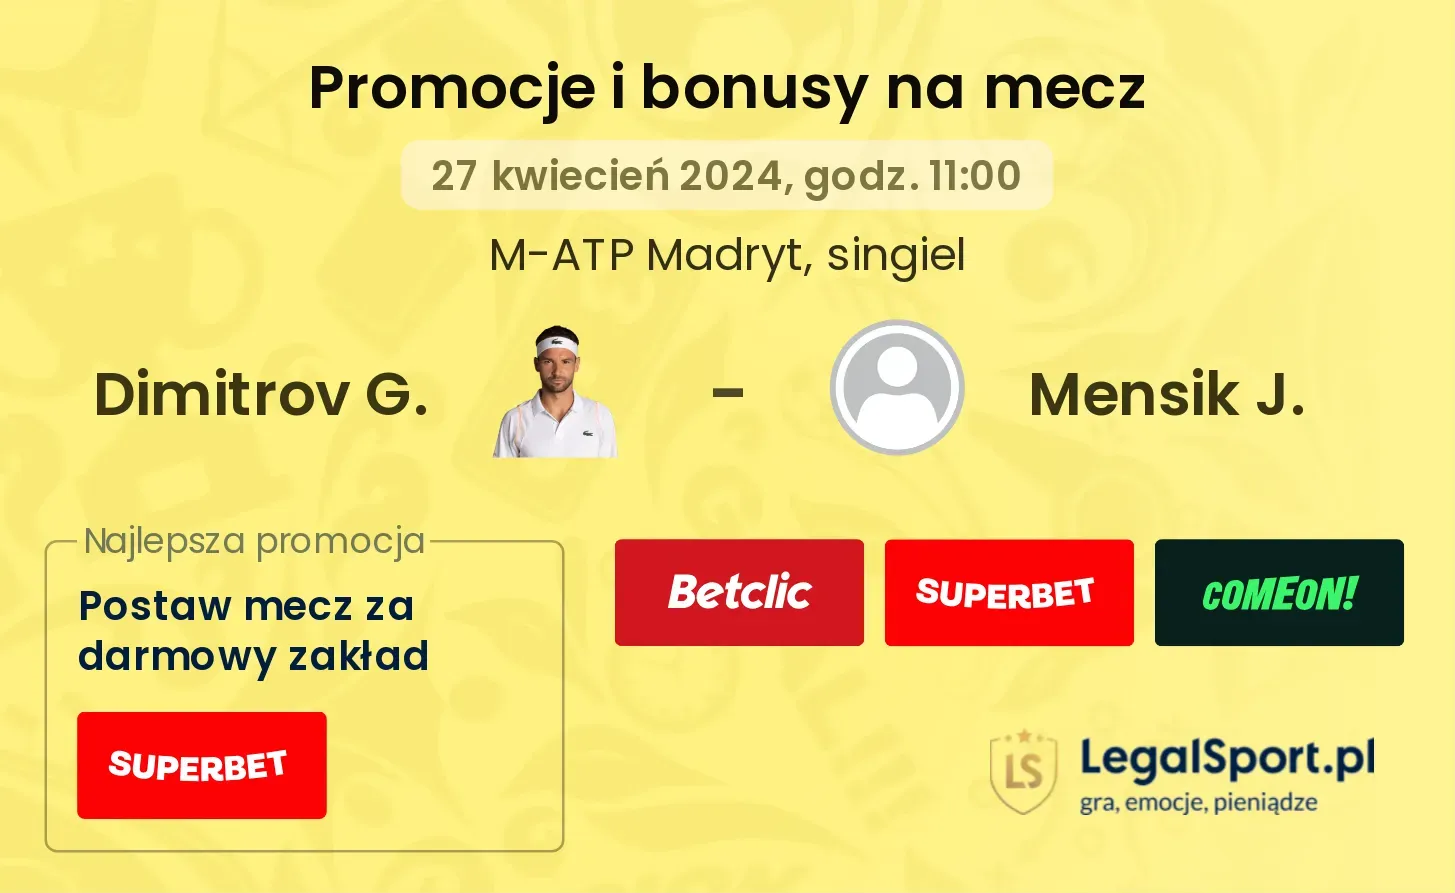 Dimitrov G. - Mensik J. promocje bonusy na mecz